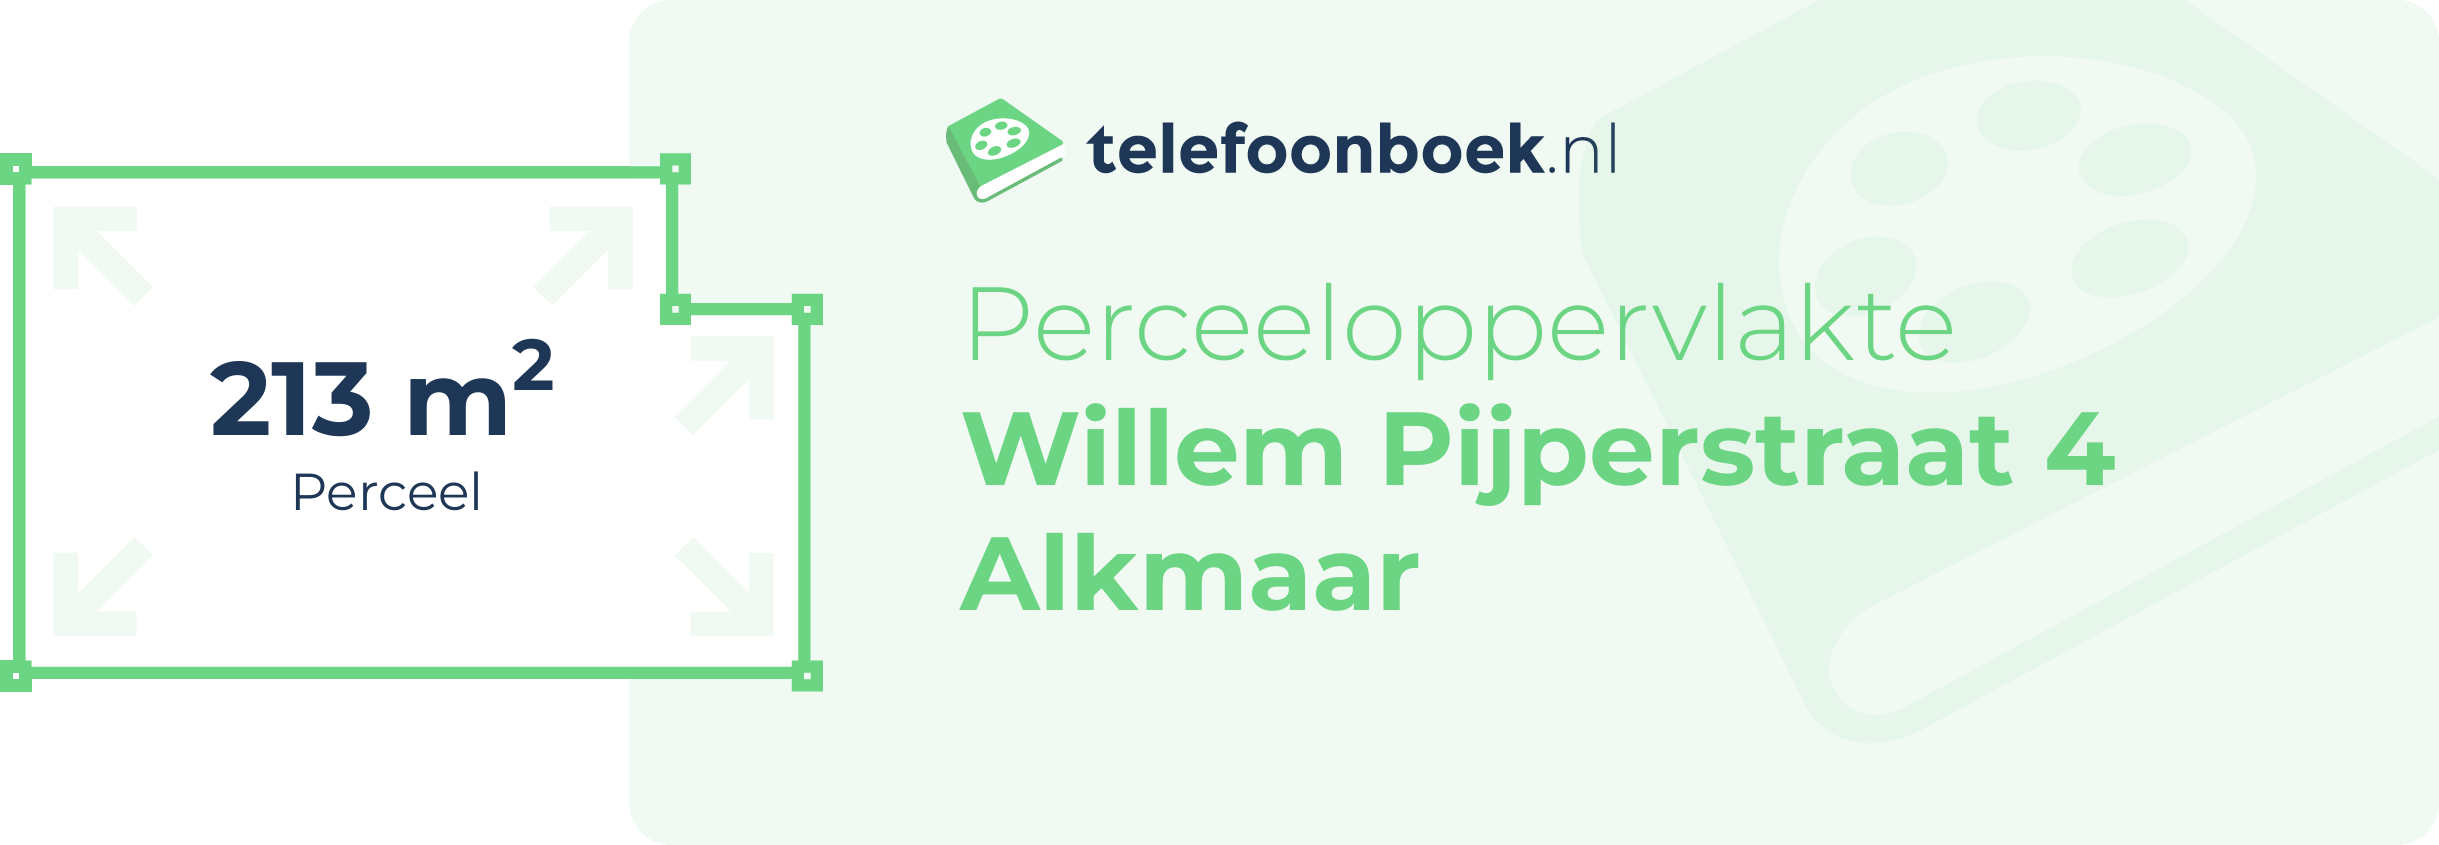 Perceeloppervlakte Willem Pijperstraat 4 Alkmaar